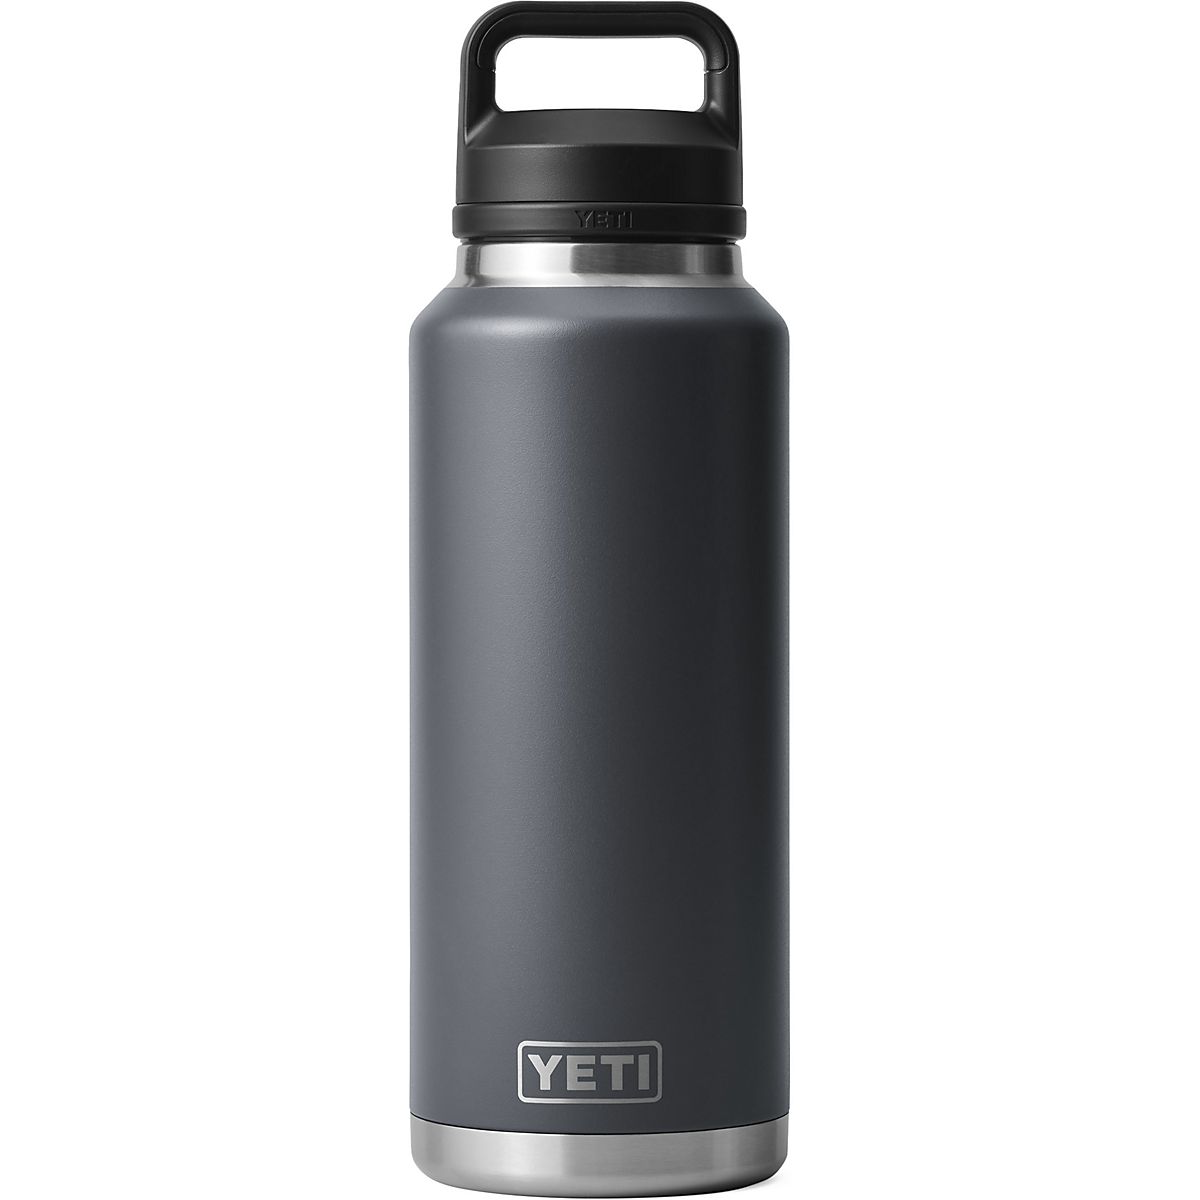 HAAM Yeti Water Bottle — HAAM